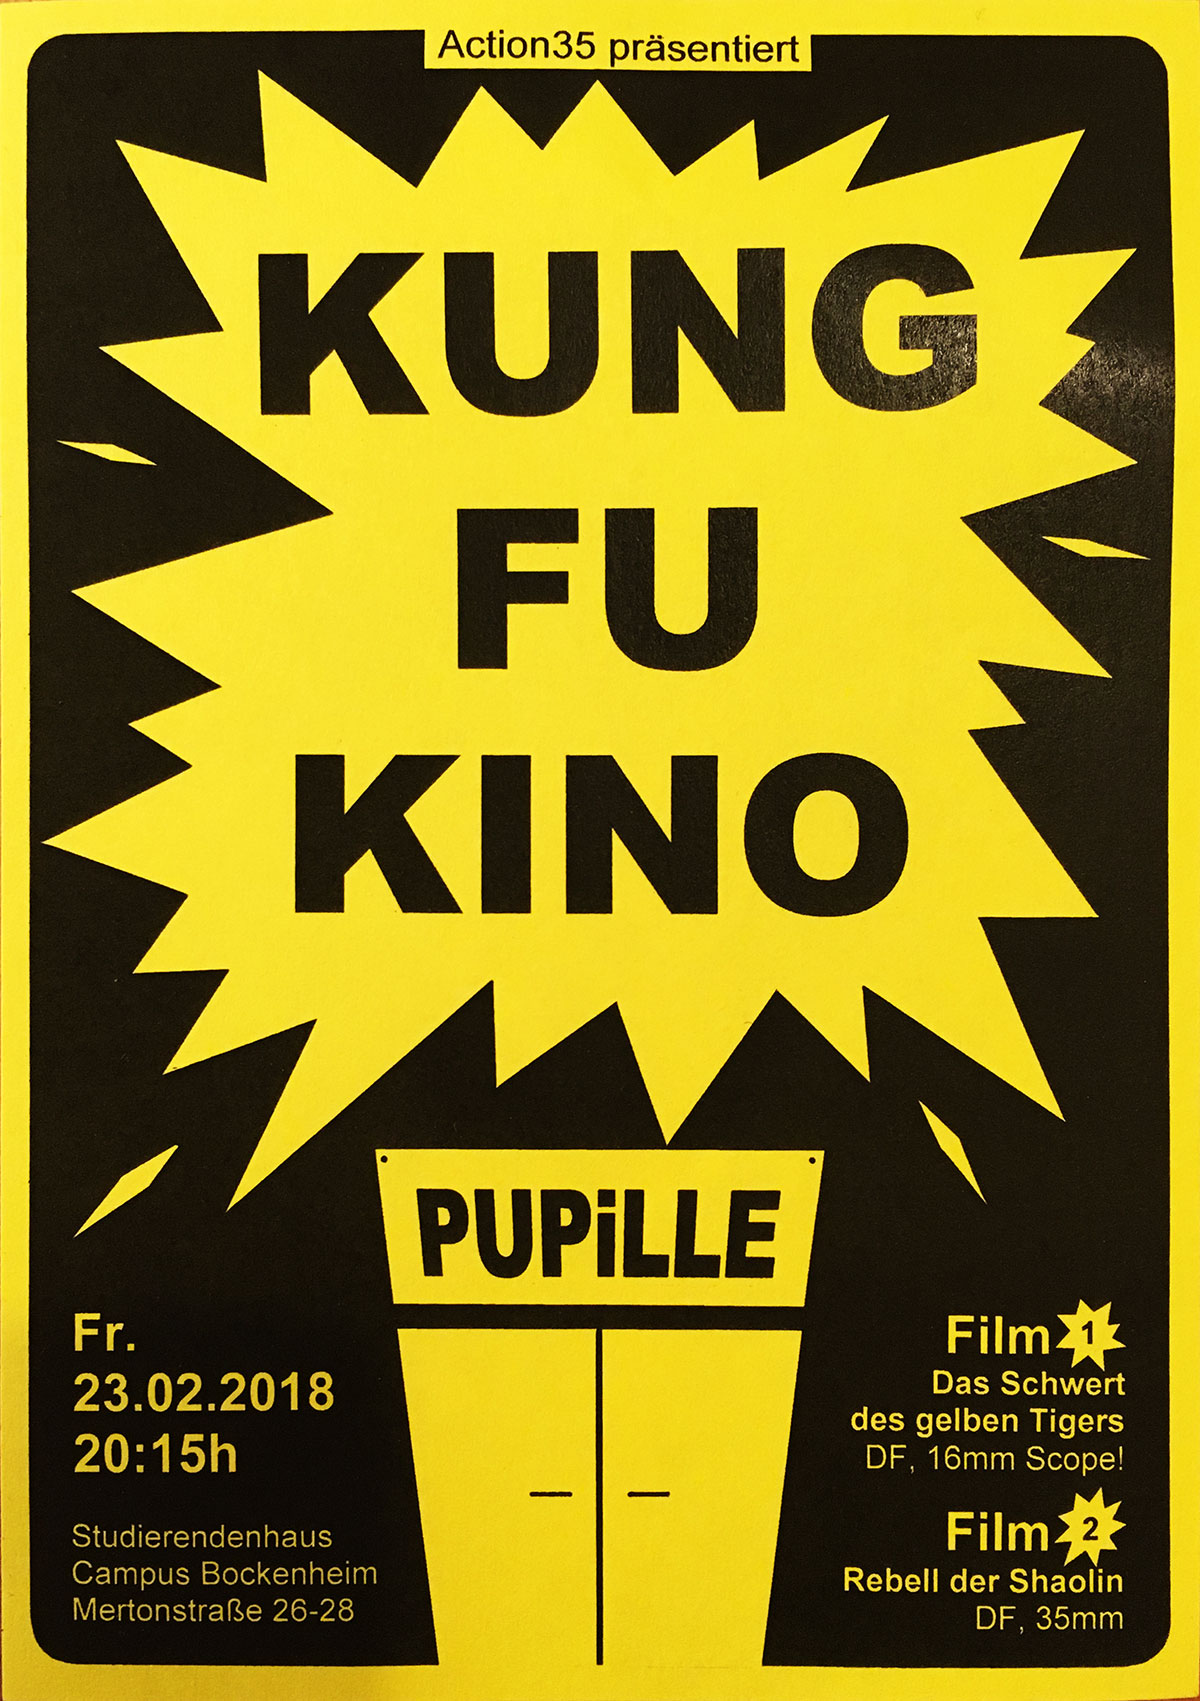 Bild für die Veranstaltung Kung Fu Kino